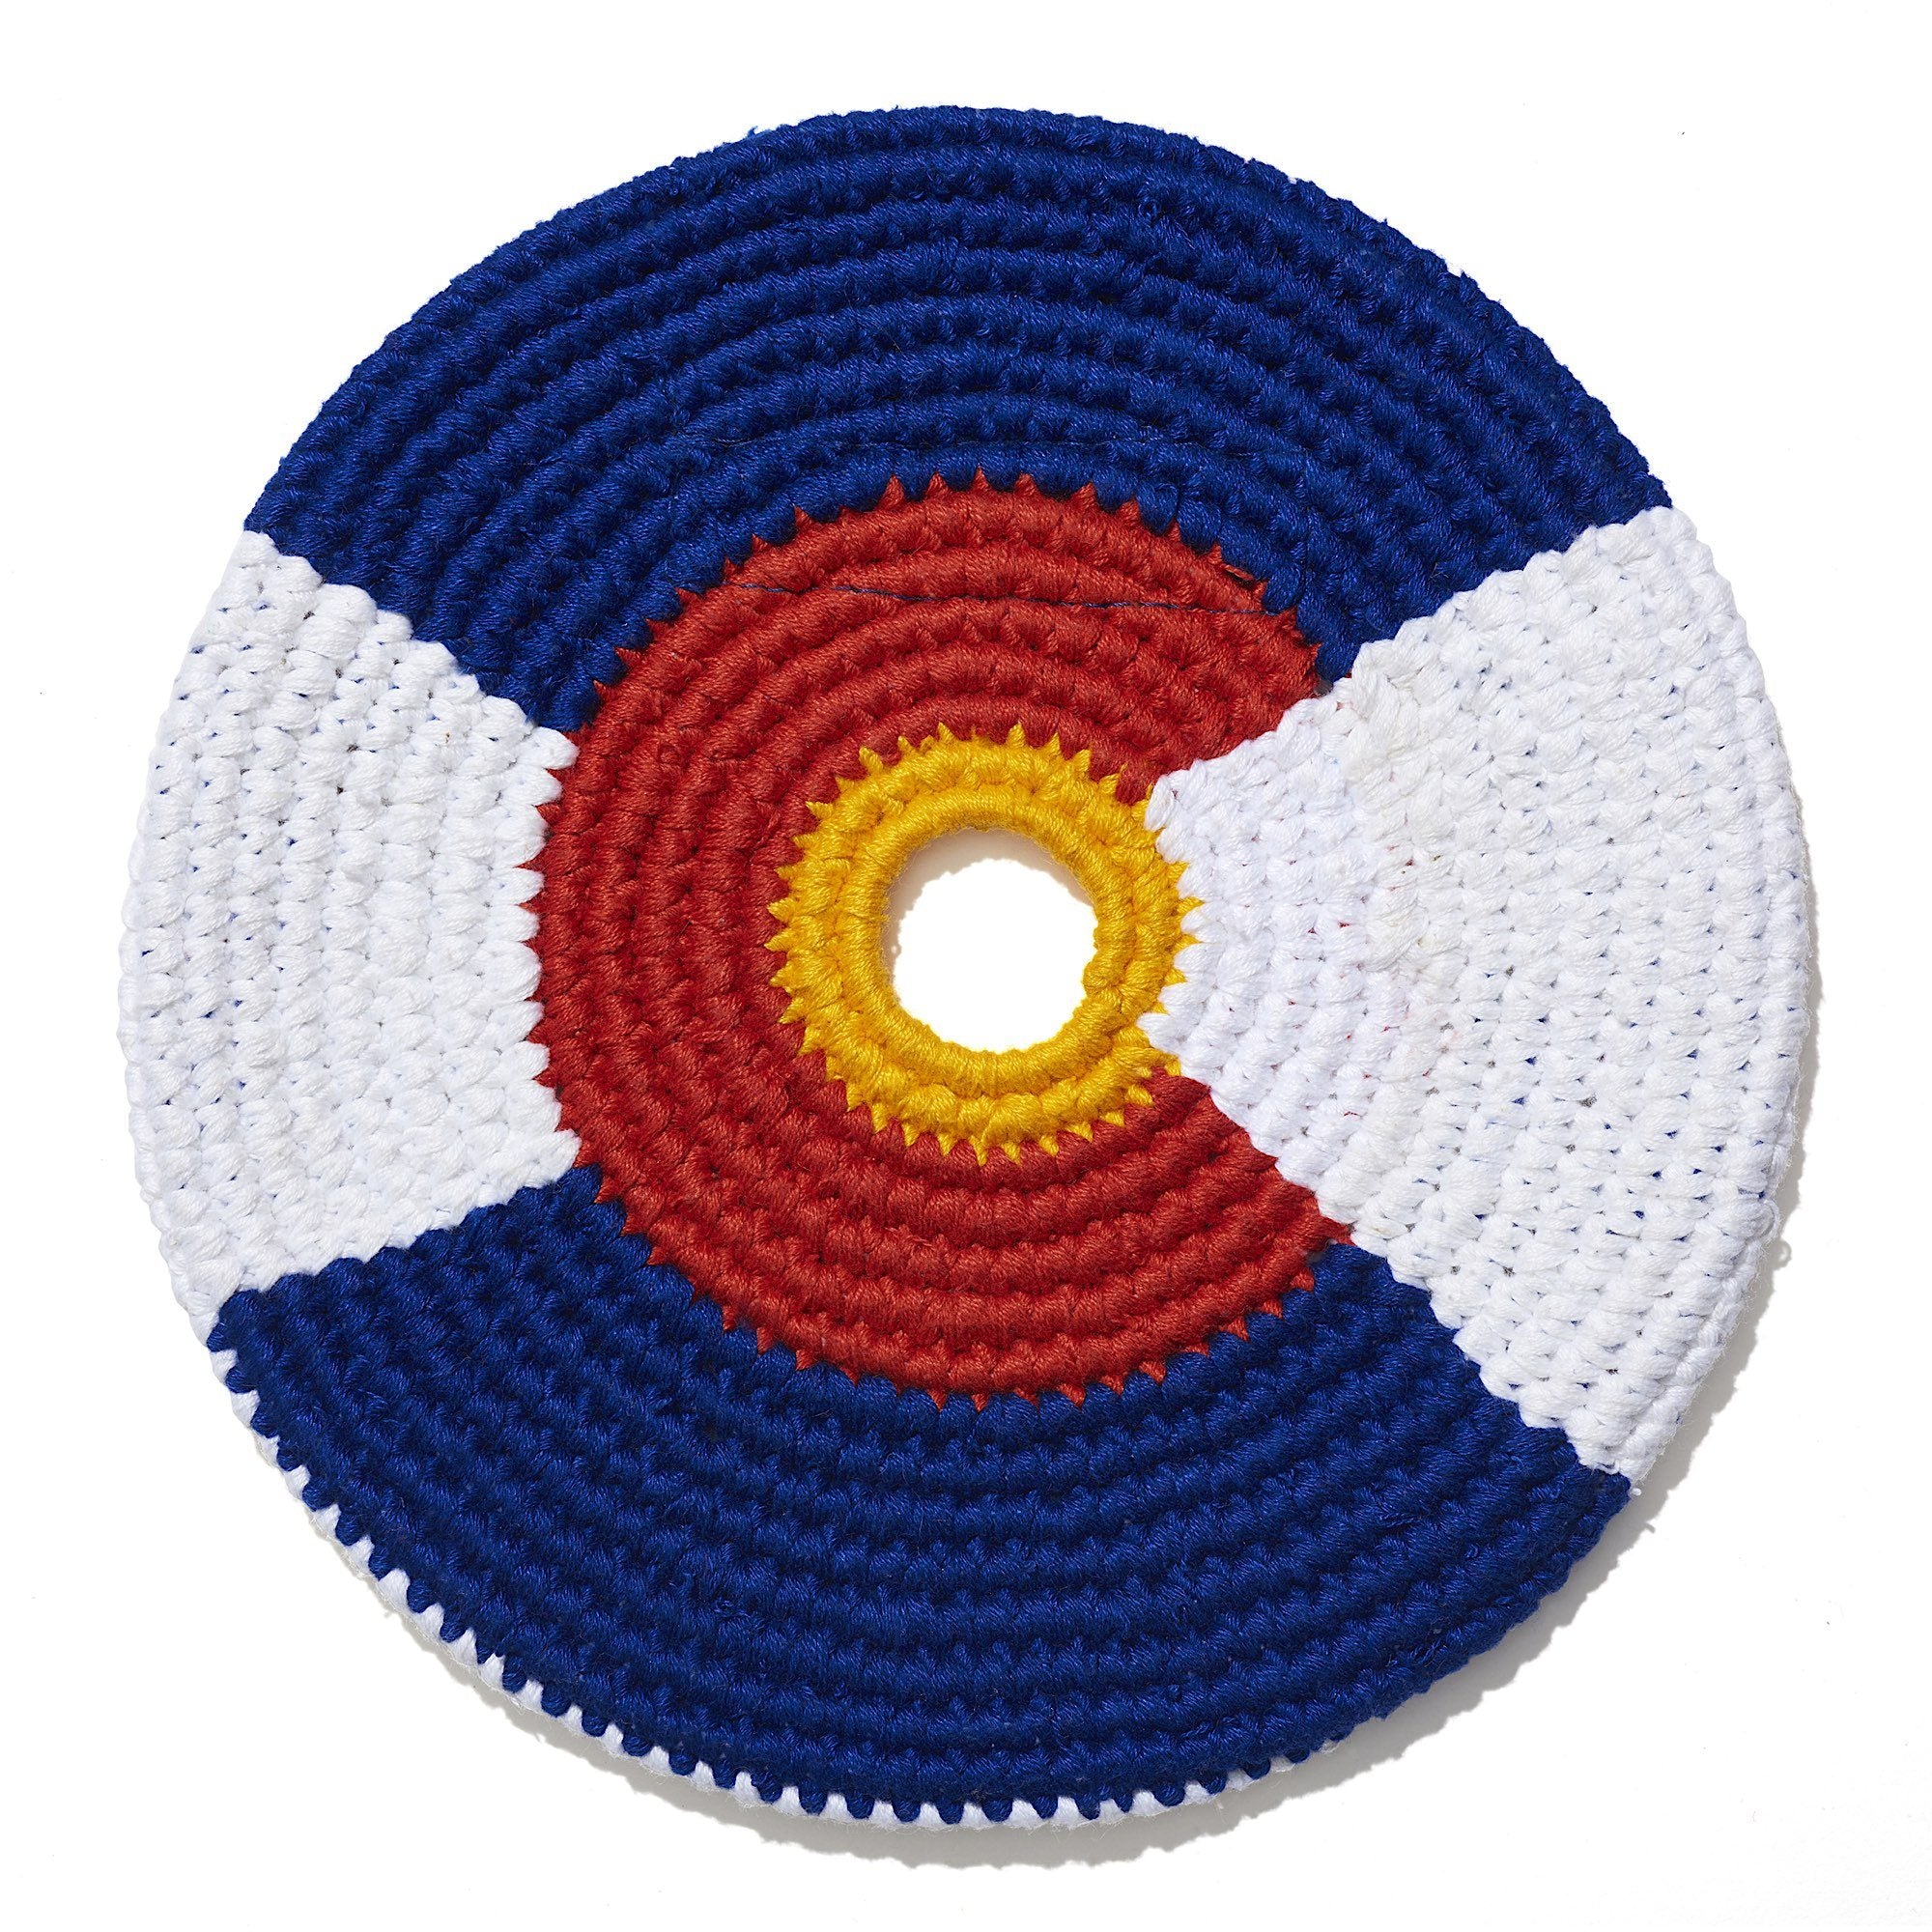 Colorado Flag Disc Flag Disc Buena Onda Experience | Handmade, Fair Trade, Crochet, Knit, Cloth Toys, Indoor, Outdoor Games, Party, Backyard Games, Sports, Beach Lake Toys